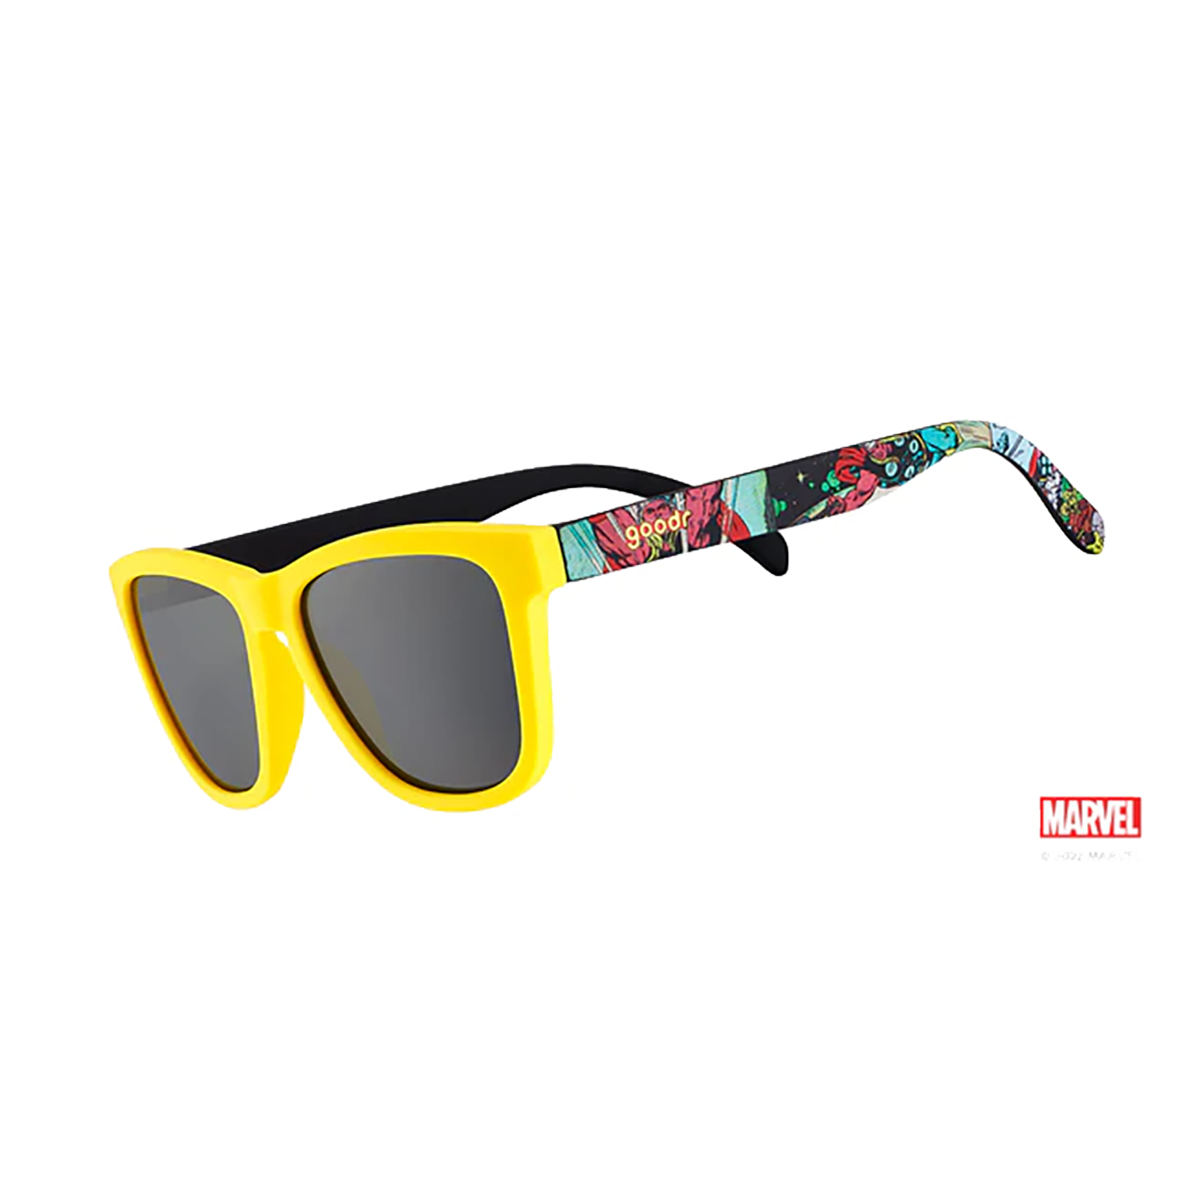 Goodr OG Marvel Limited Edition Sunglasses, , large image number null